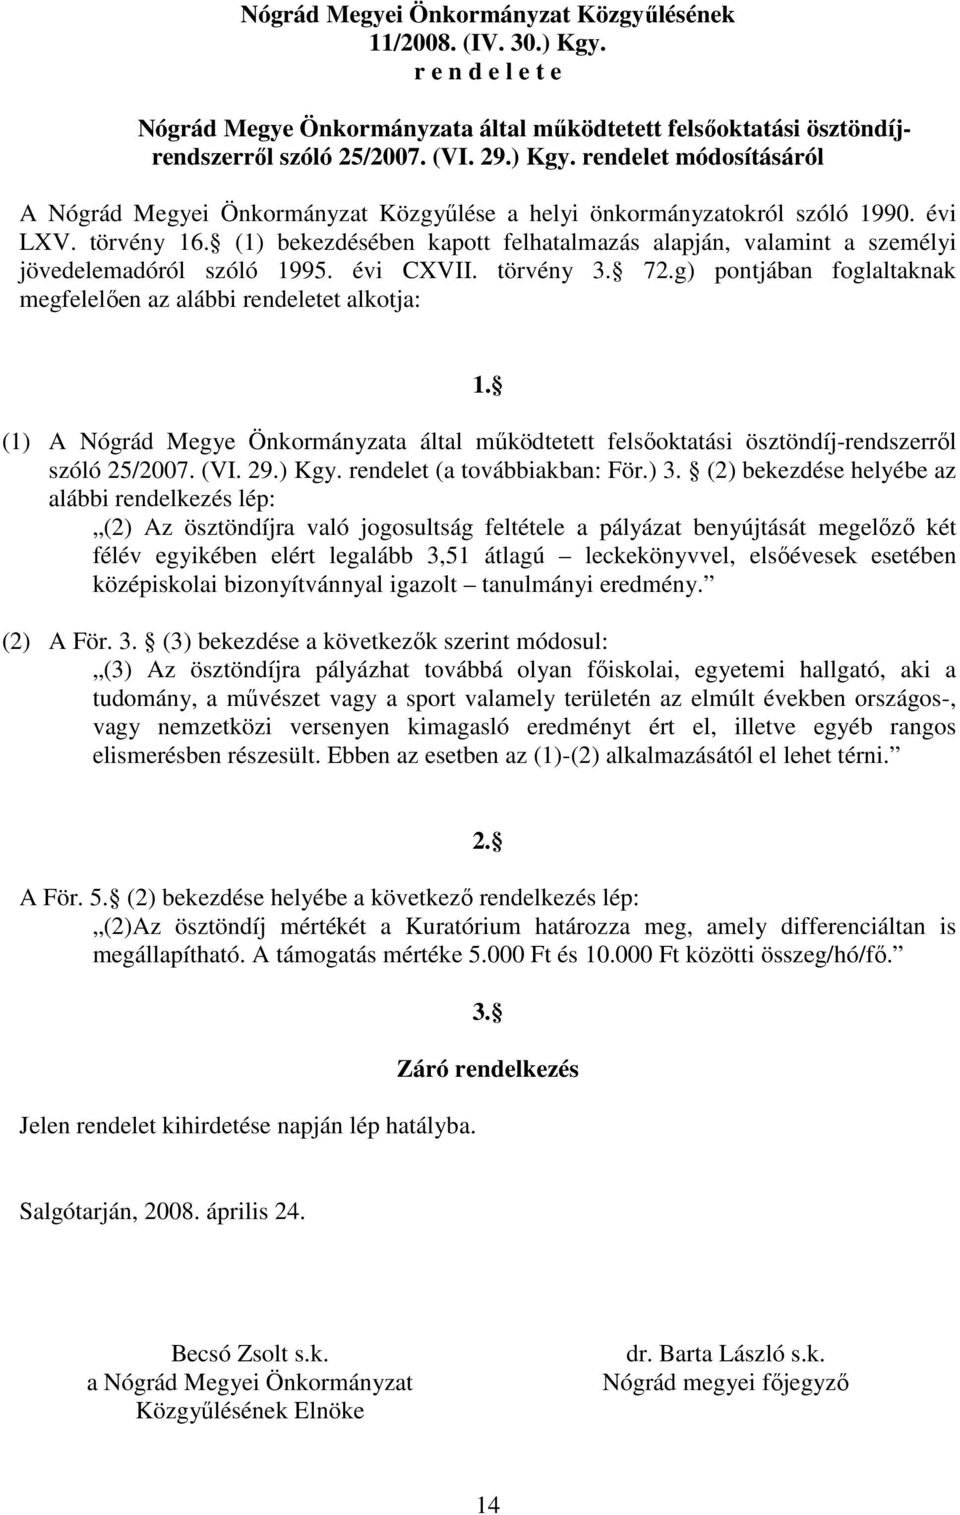 g) pontjában foglaltaknak megfelelıen az alábbi rendeletet alkotja: 1. (1) A Nógrád Megye Önkormányzata által mőködtetett felsıoktatási ösztöndíj-rendszerrıl szóló 25/2007. (VI. 29.) Kgy.